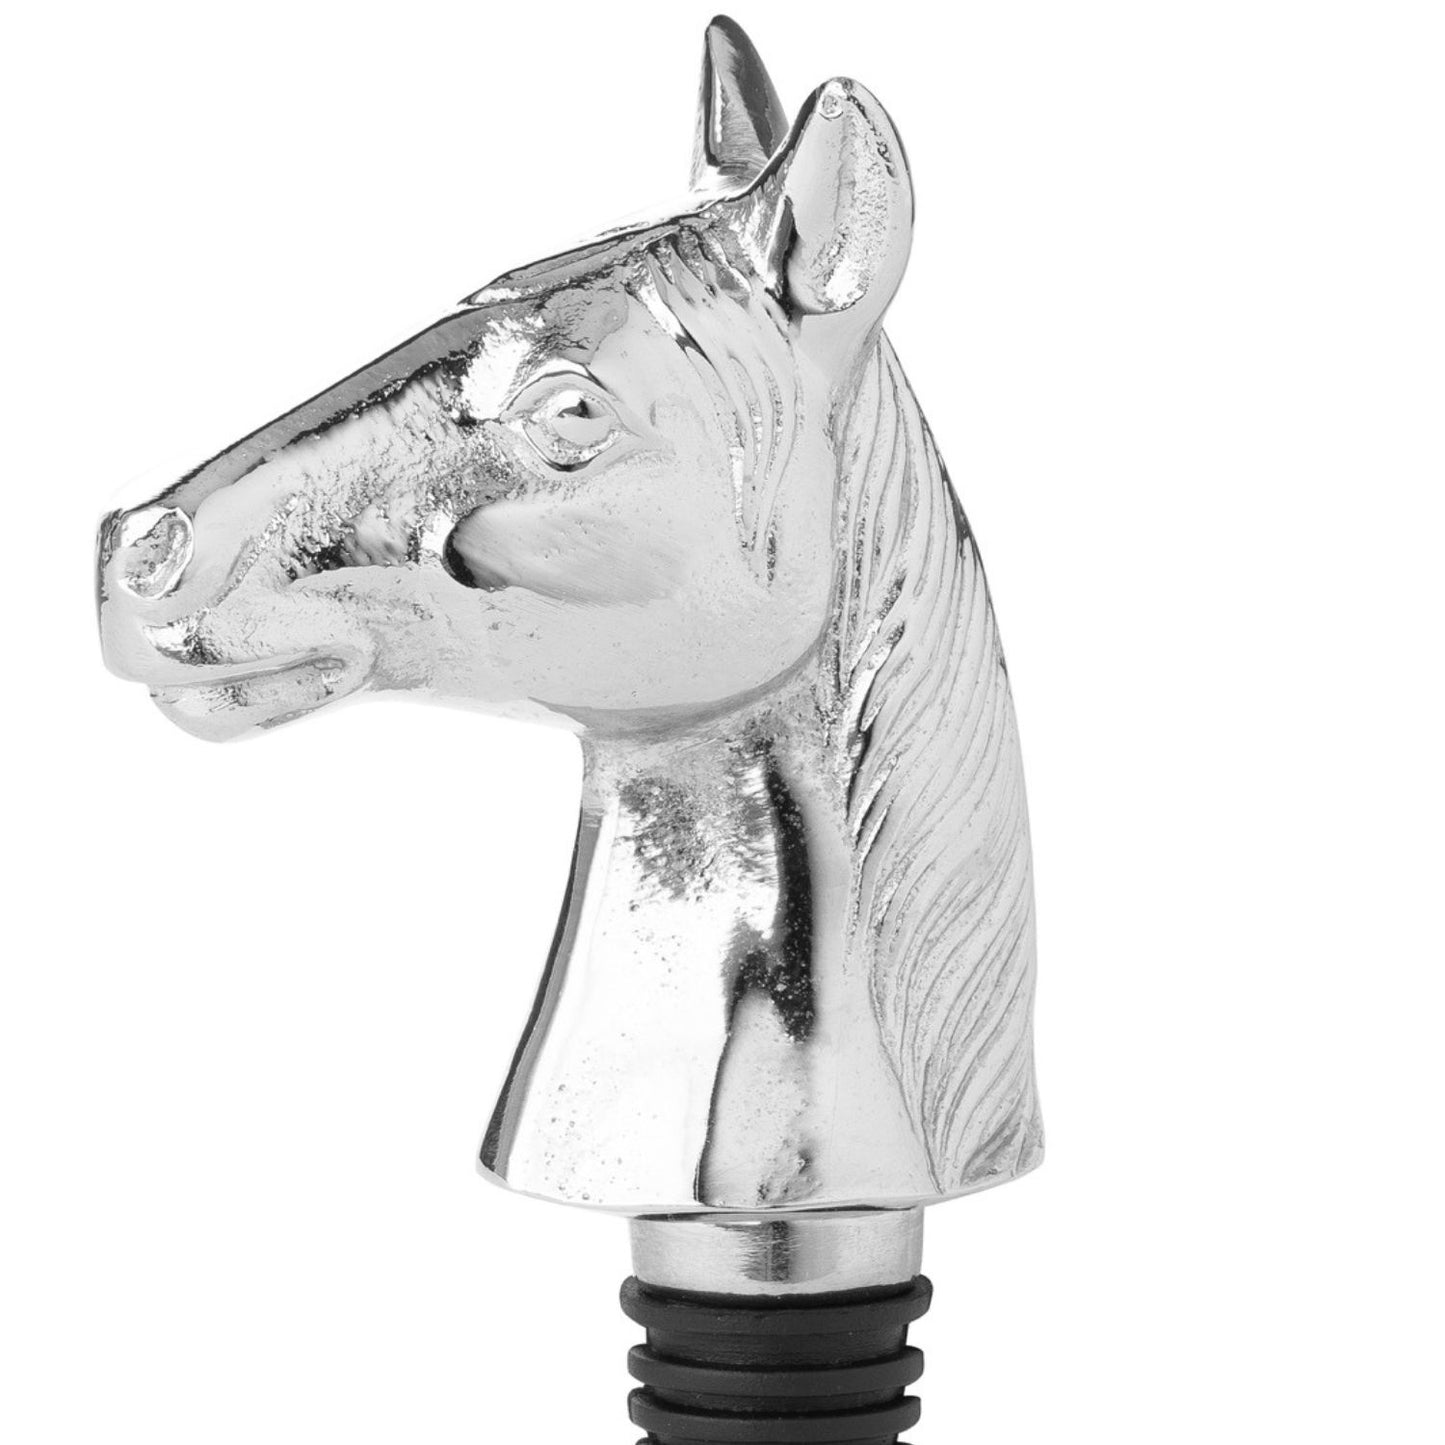 Horse bottle stopper in silver nickel